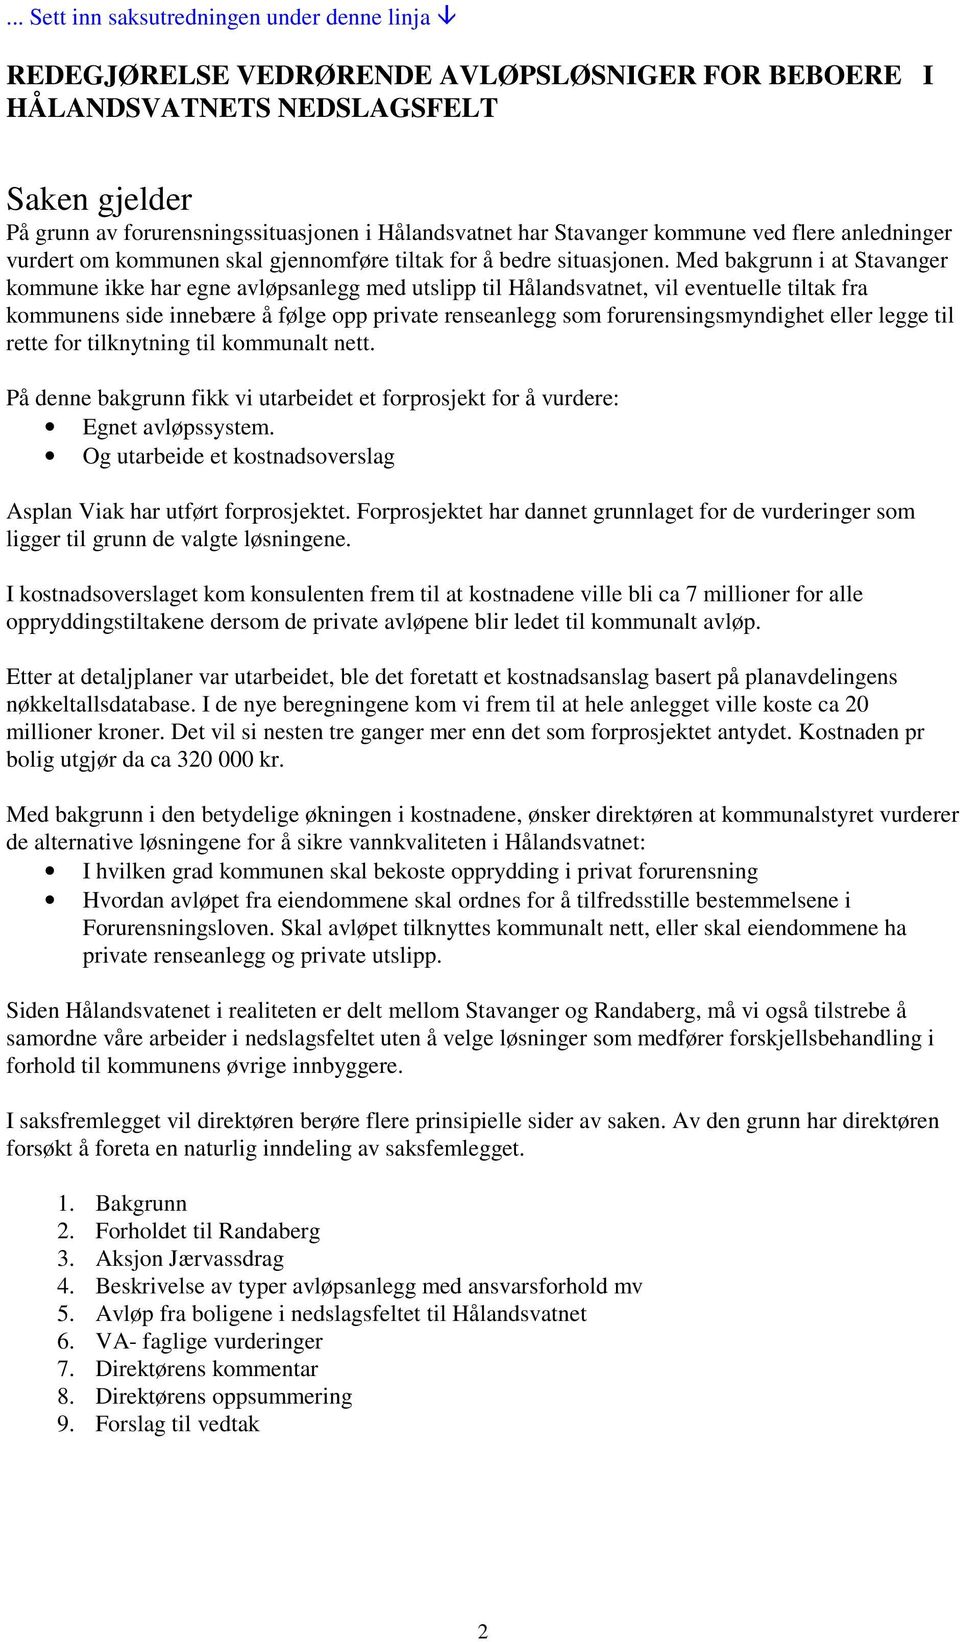 Med bakgrunn i at Stavanger kommune ikke har egne avløpsanlegg med utslipp til Hålandsvatnet, vil eventuelle tiltak fra kommunens side innebære å følge opp private renseanlegg som